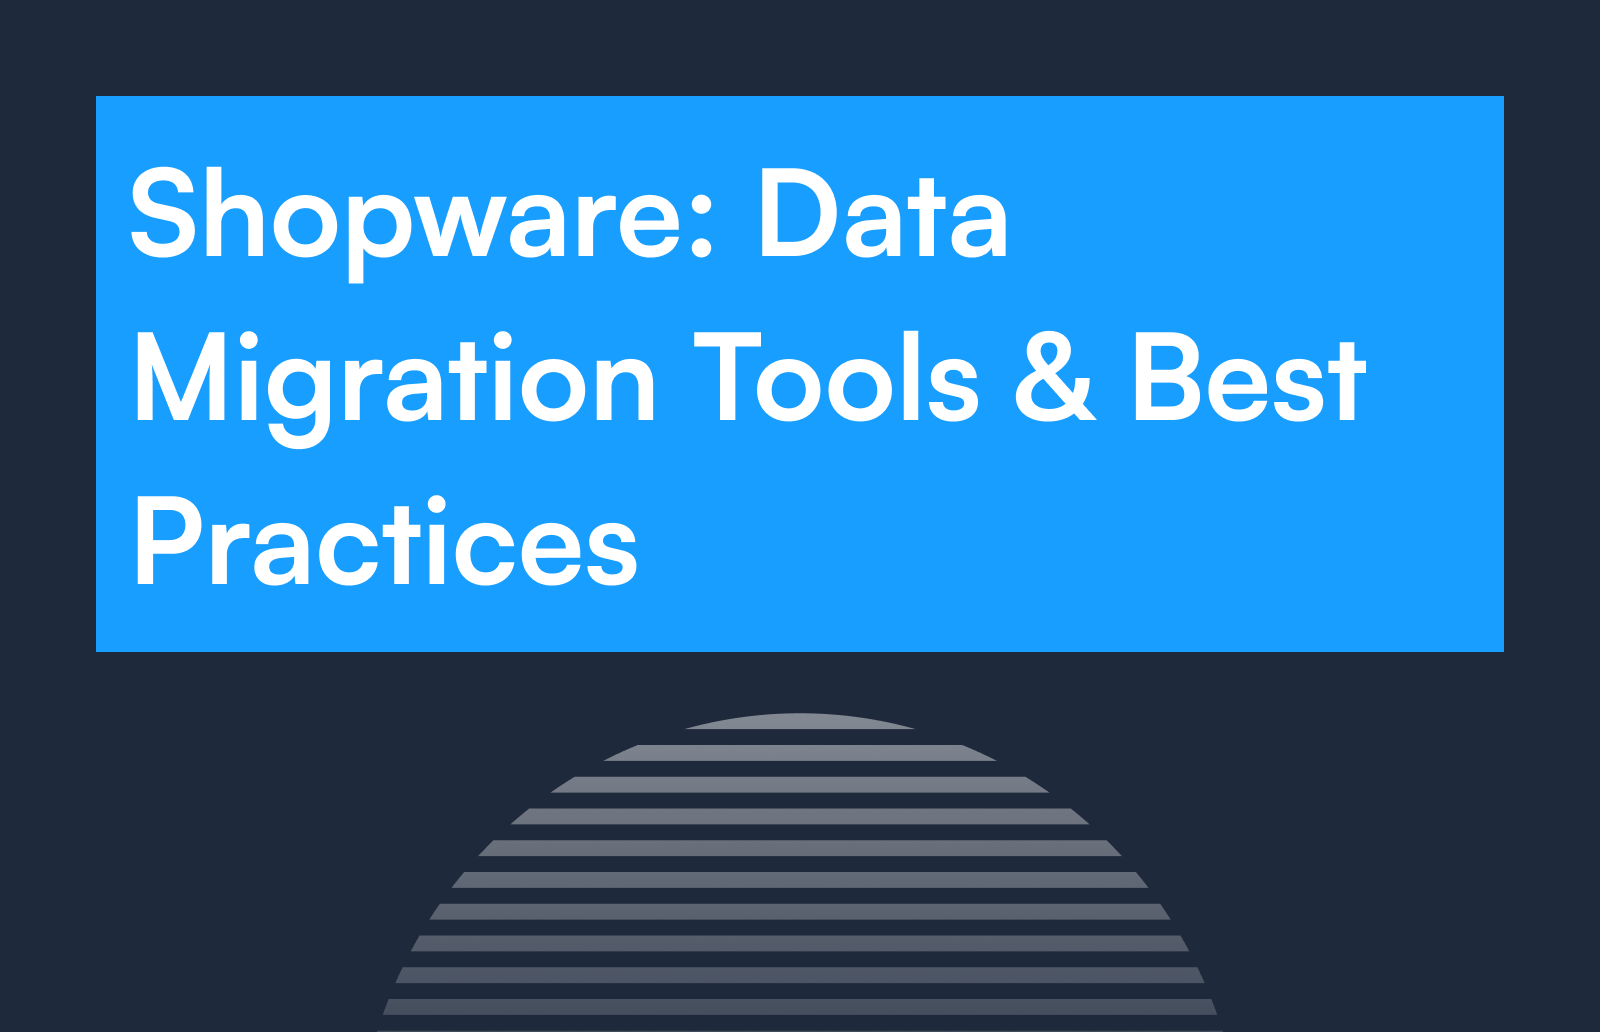 Shopware: Data Migration Tools & Best Practices